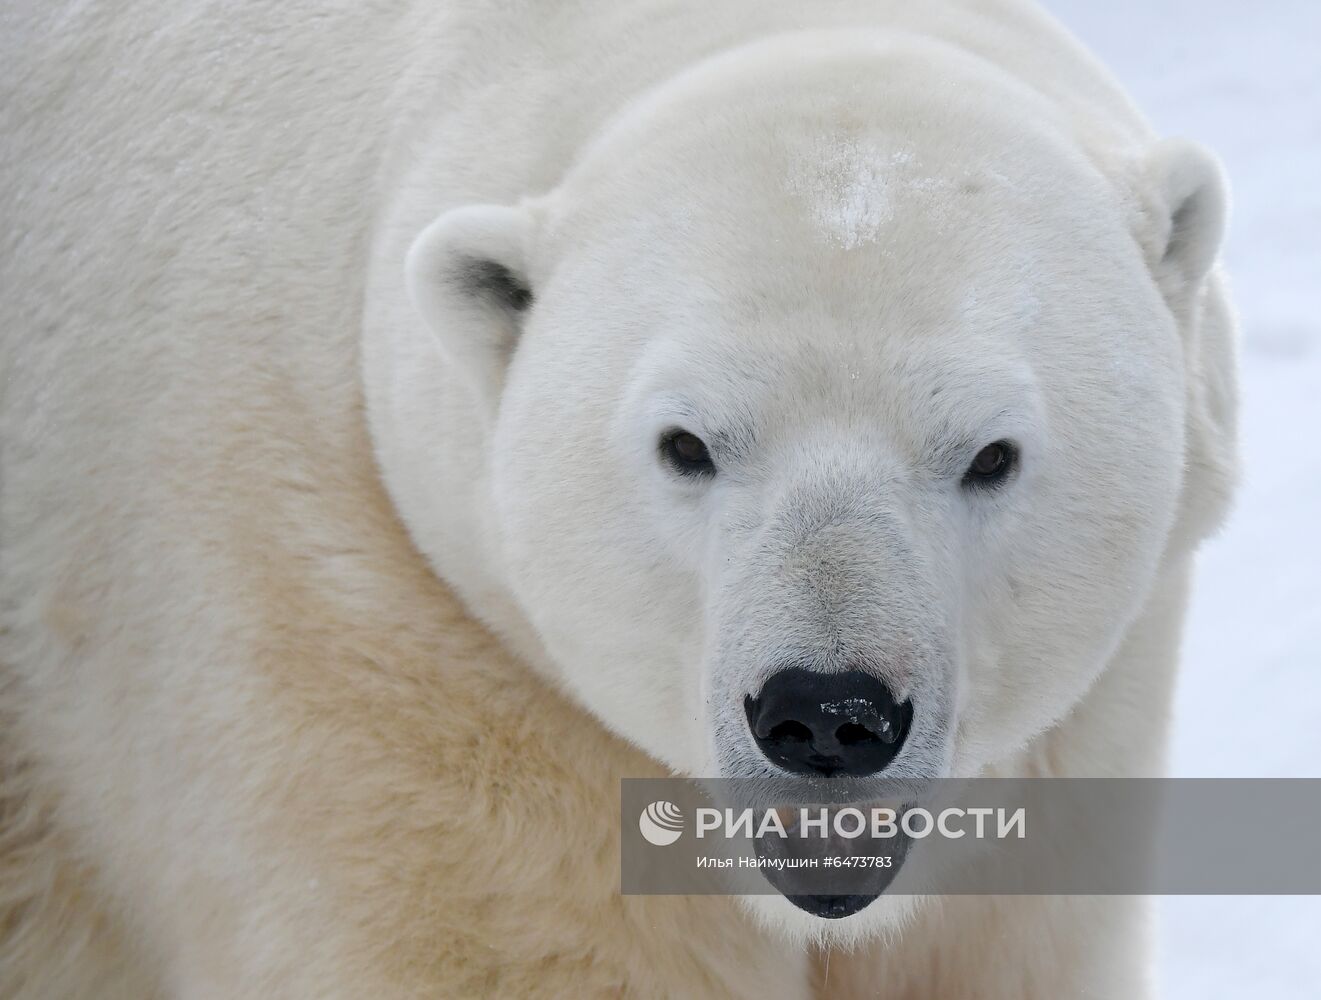 Празднование Международного дня полярного медведя в парке "Роев ручей"